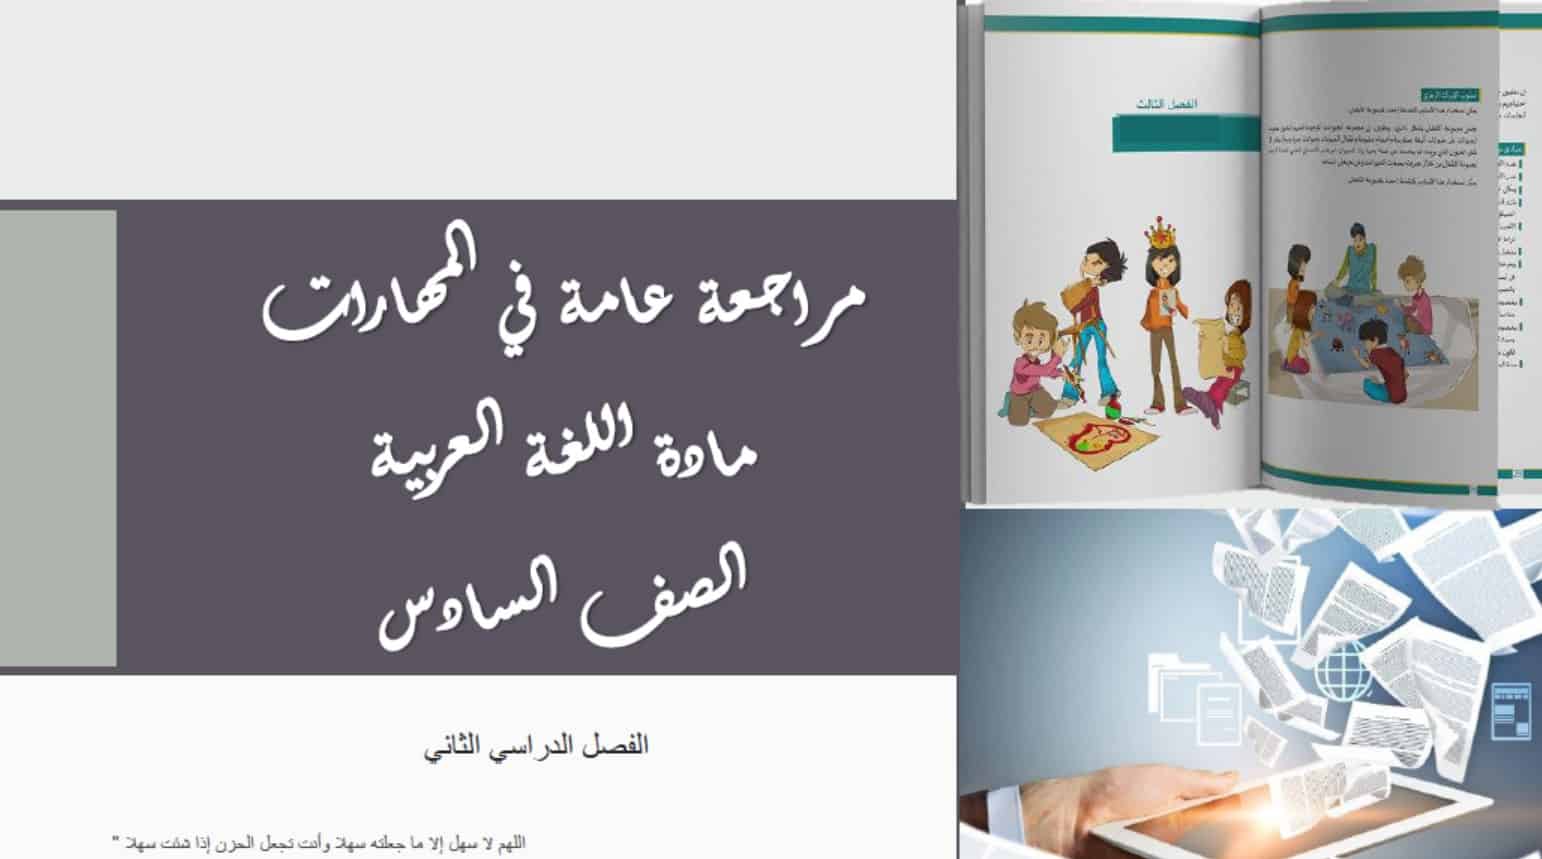 مراجعة عامة في مهارات اللغة العربية الصف السادس